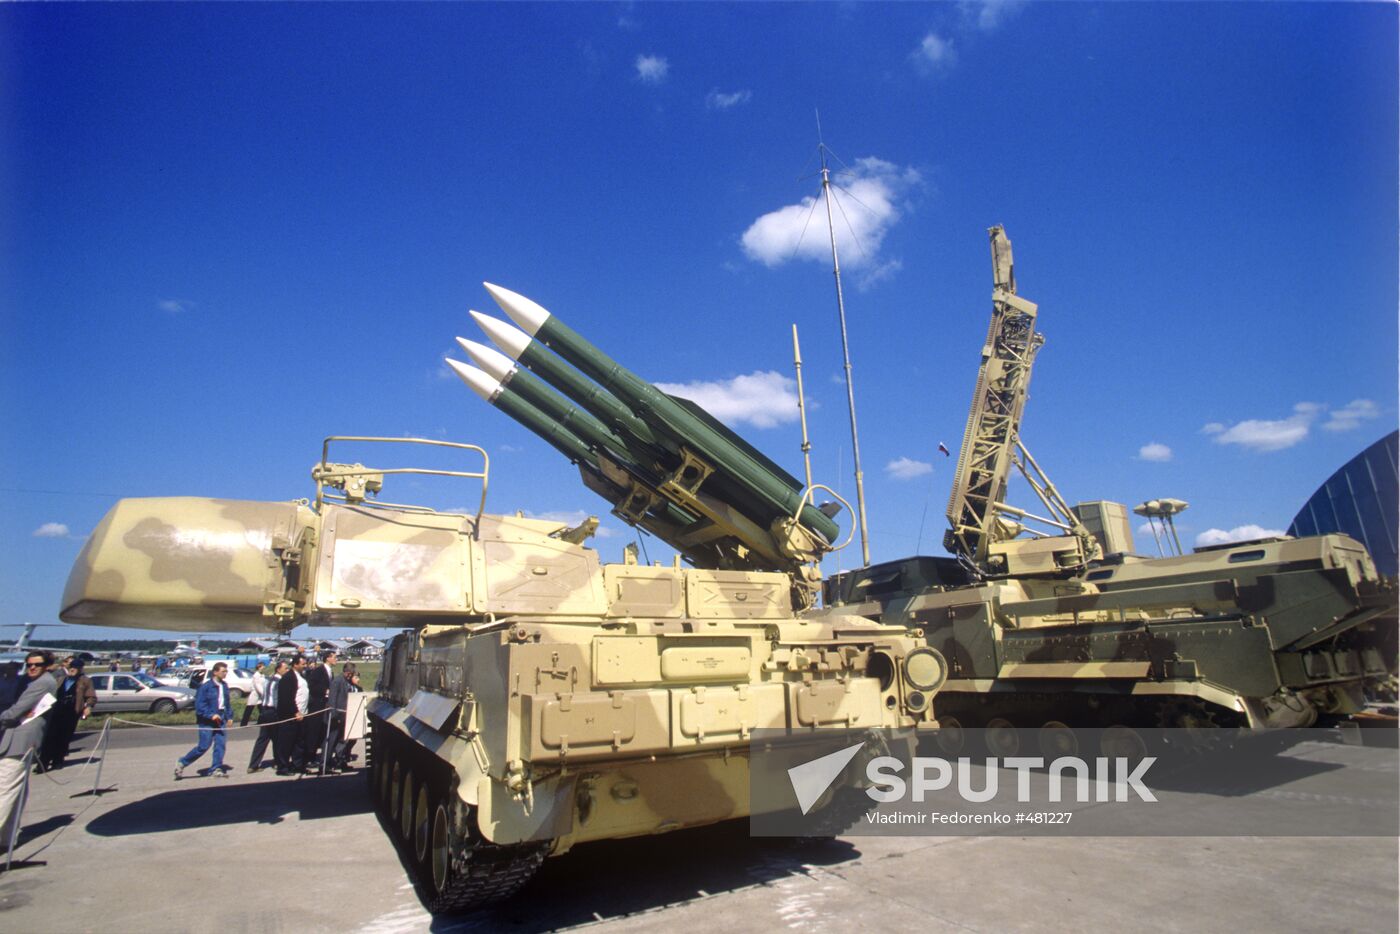 Buk-M1 missile system